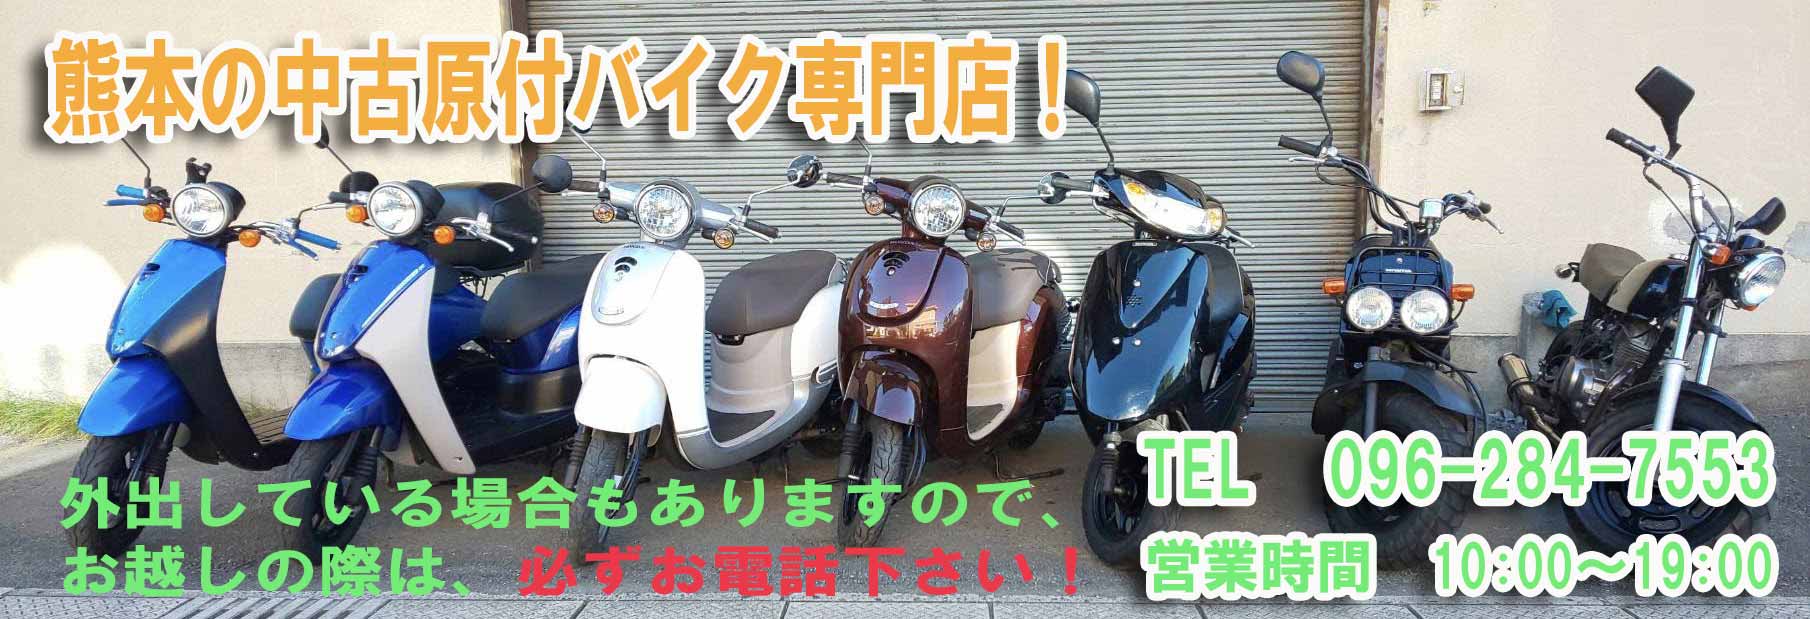 熊本の中古原付販売専門店 50cc 125ccまで